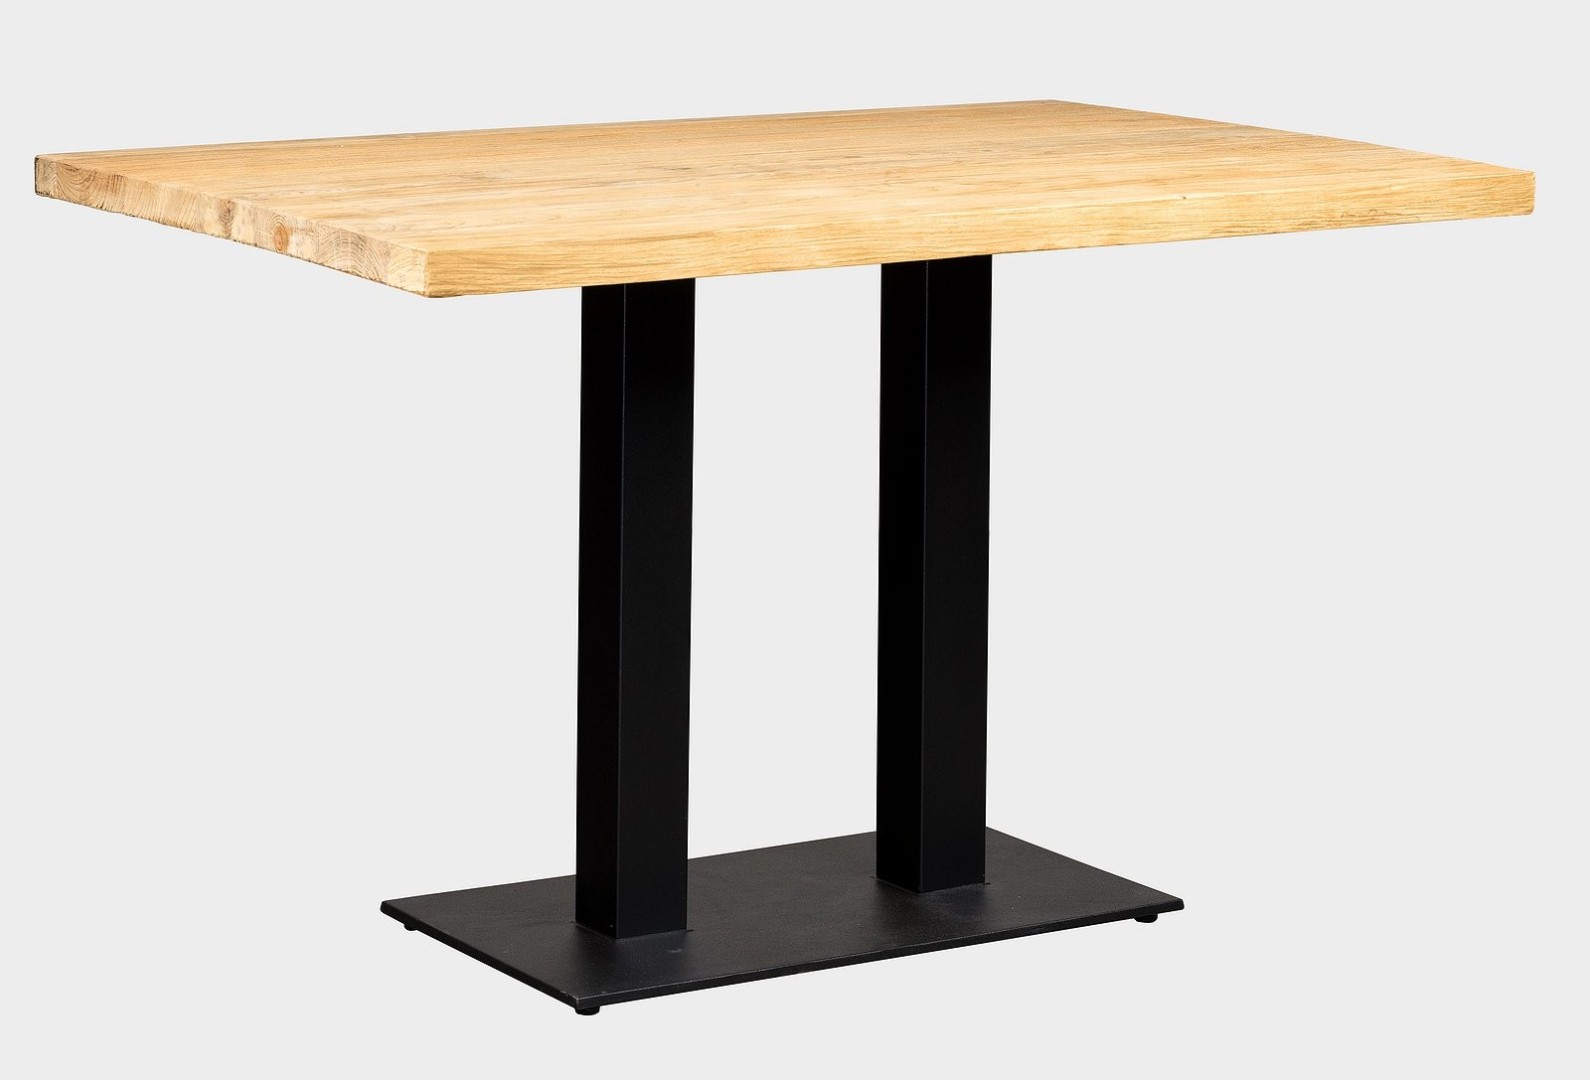 FaKOPA s. r. o. TEAK - stolová deska z teaku 120x80 cm, teak